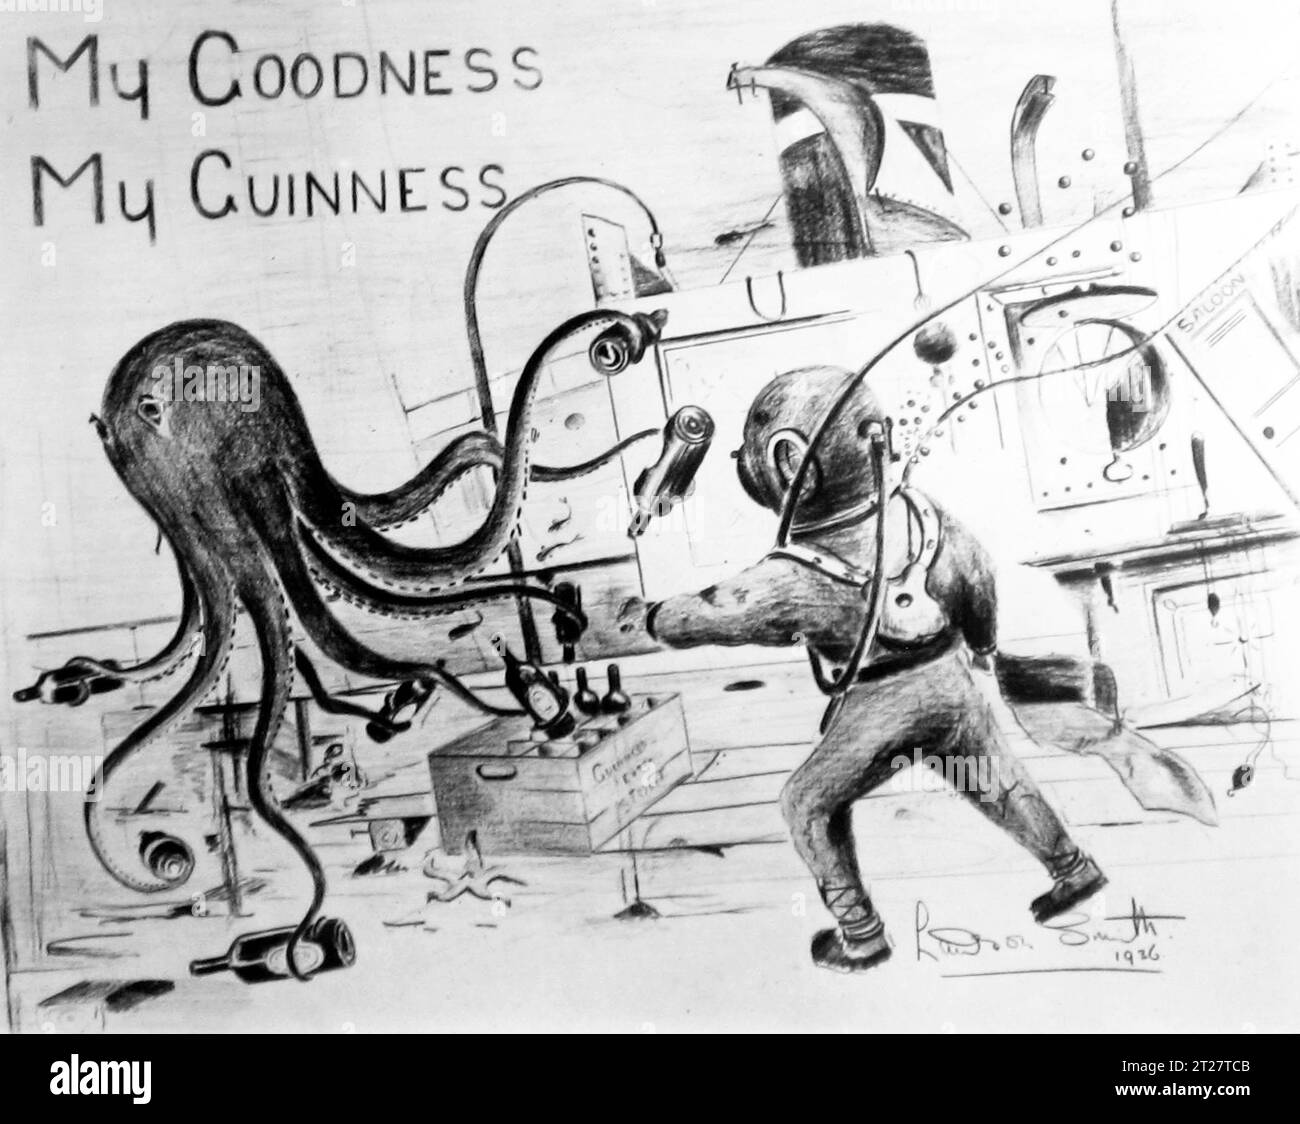 Anuncio de Guinness, posiblemente en los años treinta Foto de stock